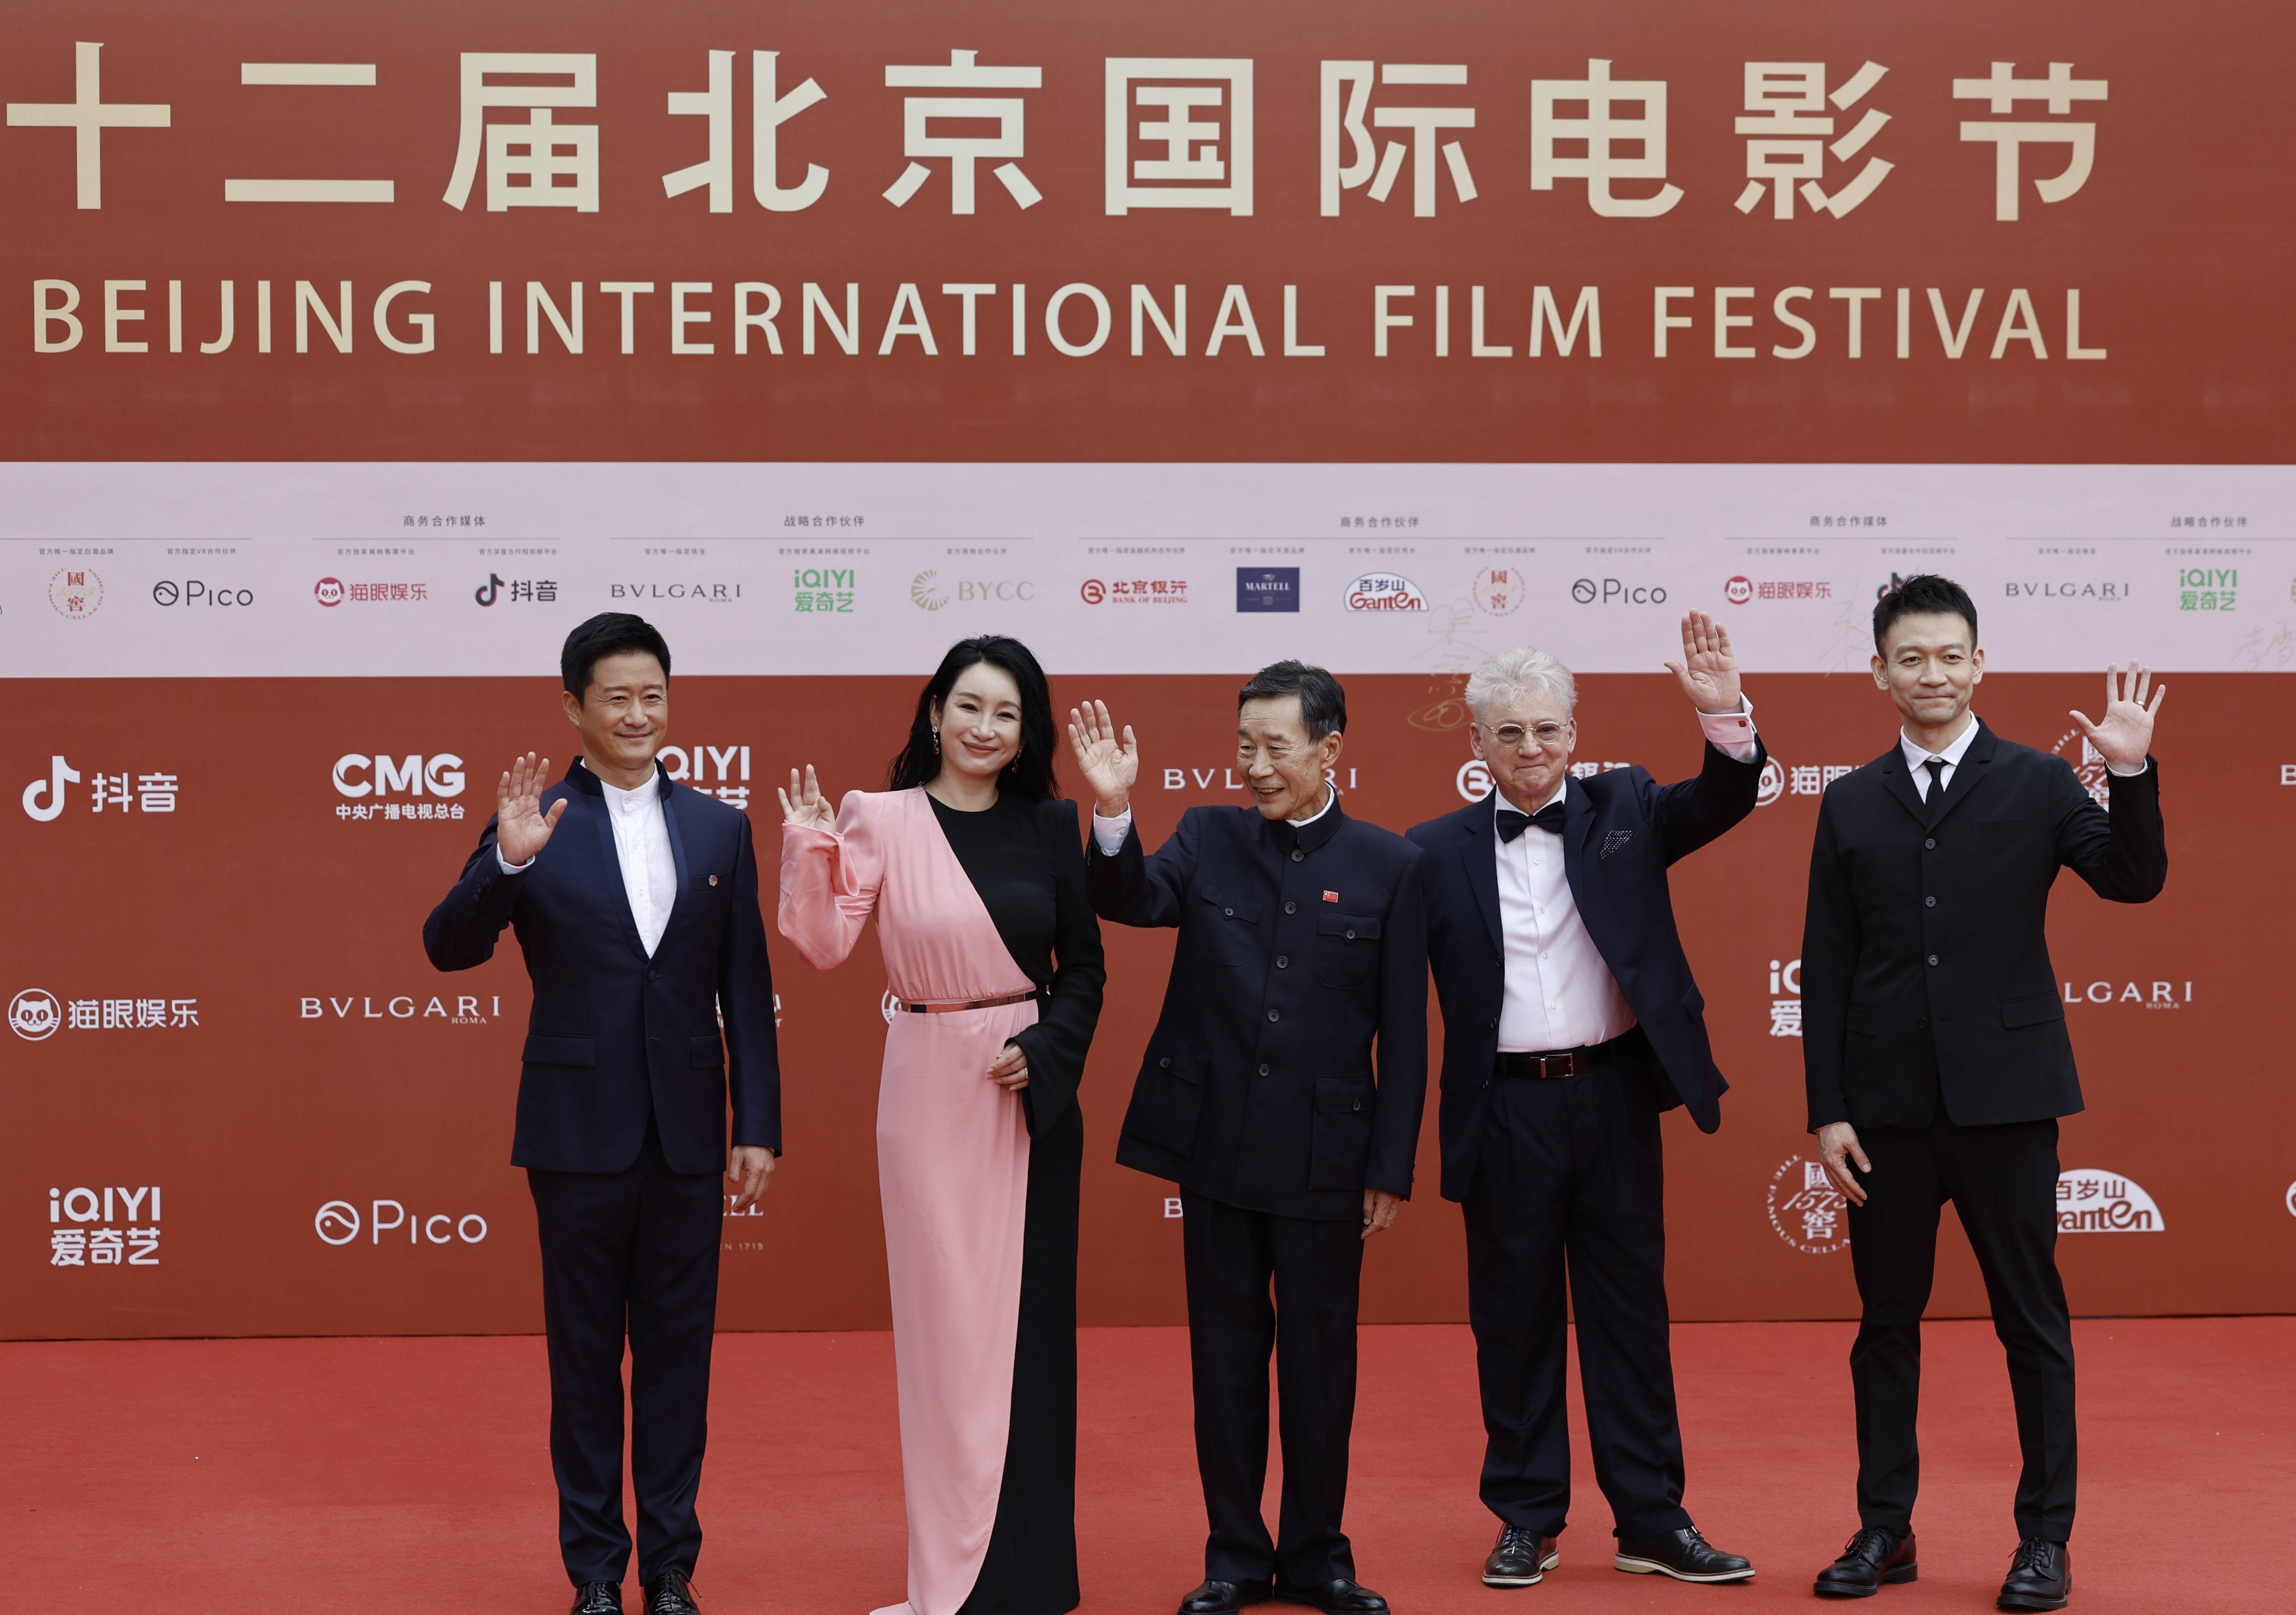 颁奖人,再到评奖人,他与这个电影节有缘:2012年,第二届北京国际电影节